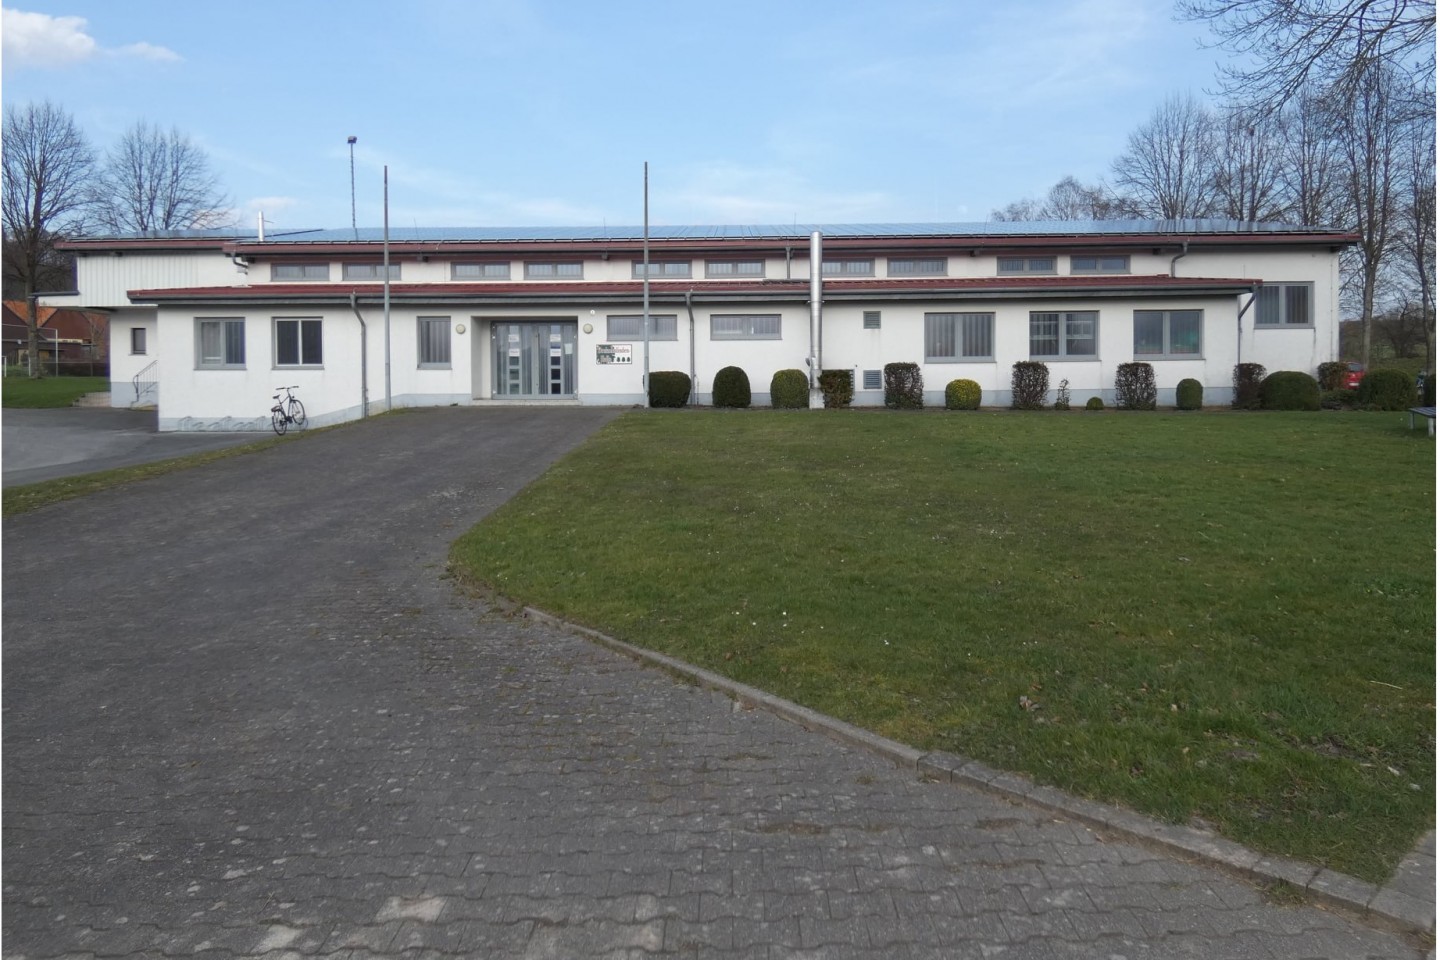 Neues Corona-Testzentrum in Bad Driburg - Alhausen